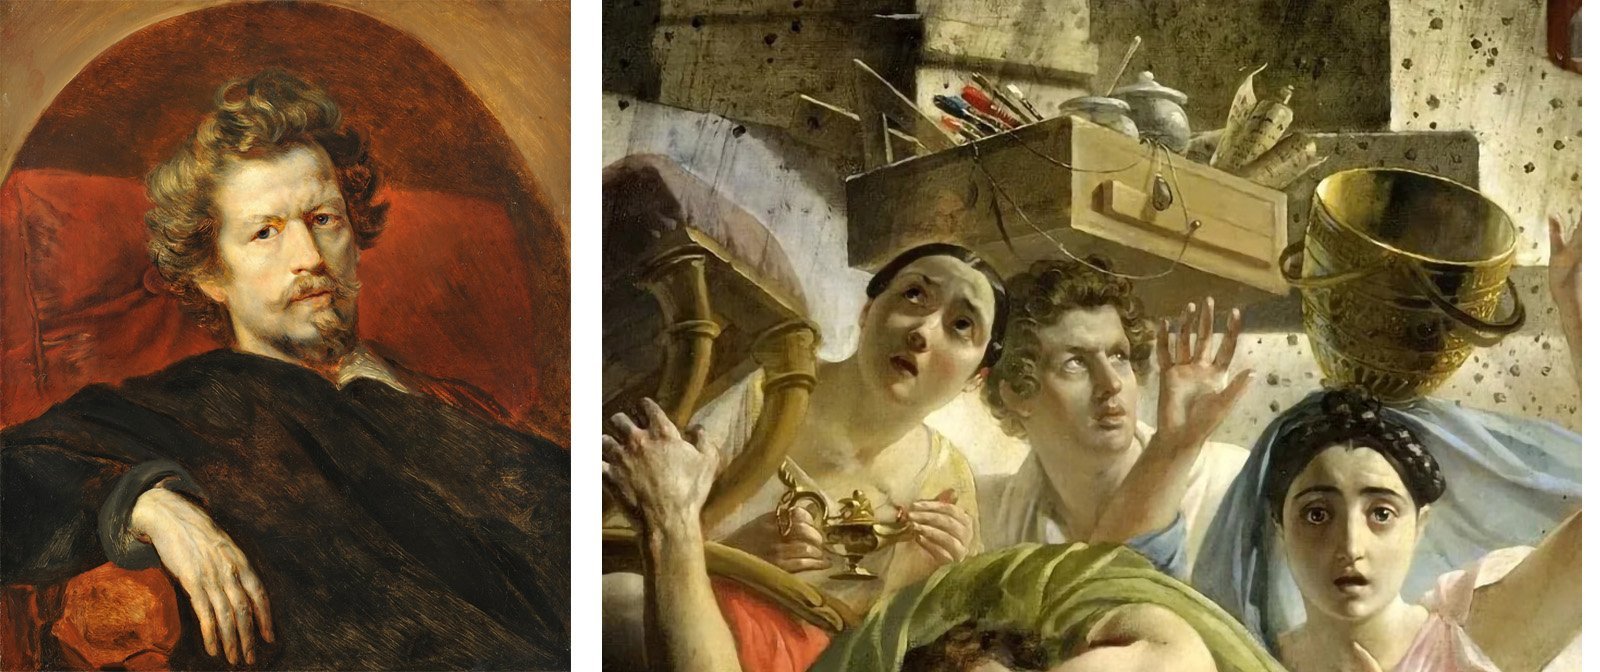 Критики нещадно критиковали картину Карла Брюллова «Последний день Помпеи», что же в ней было не так?